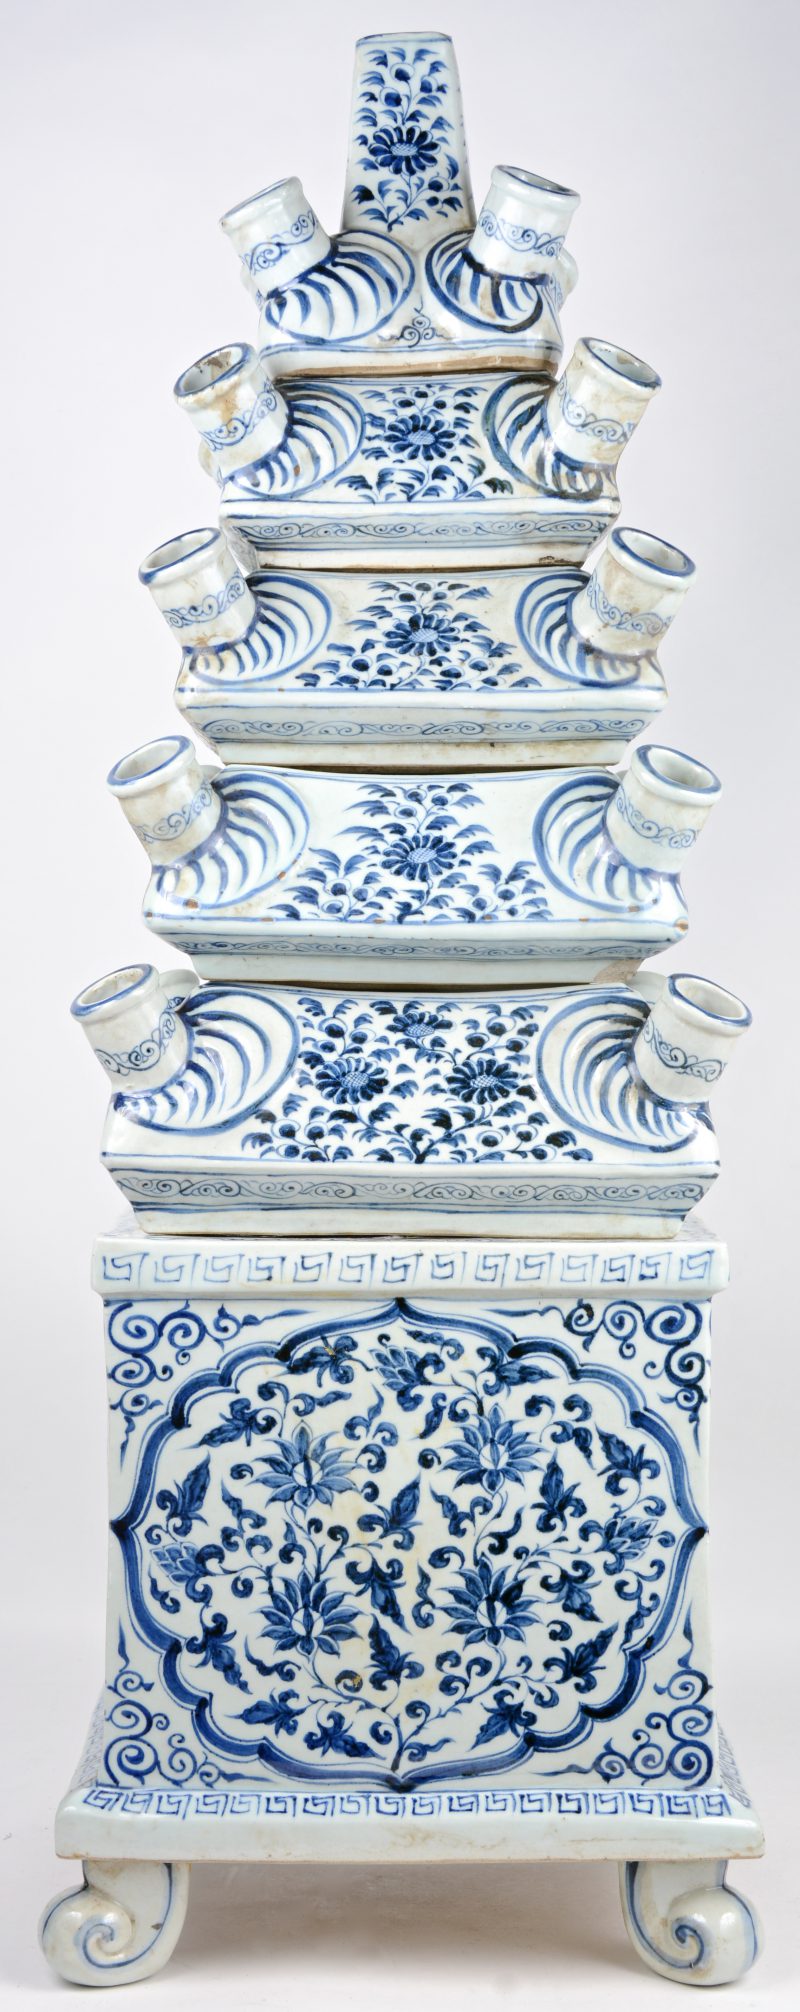 Een uit zes delen opgebouwde tulpenvaas van Chinees porselein, versierd met een blauw op wit bloemendecor.